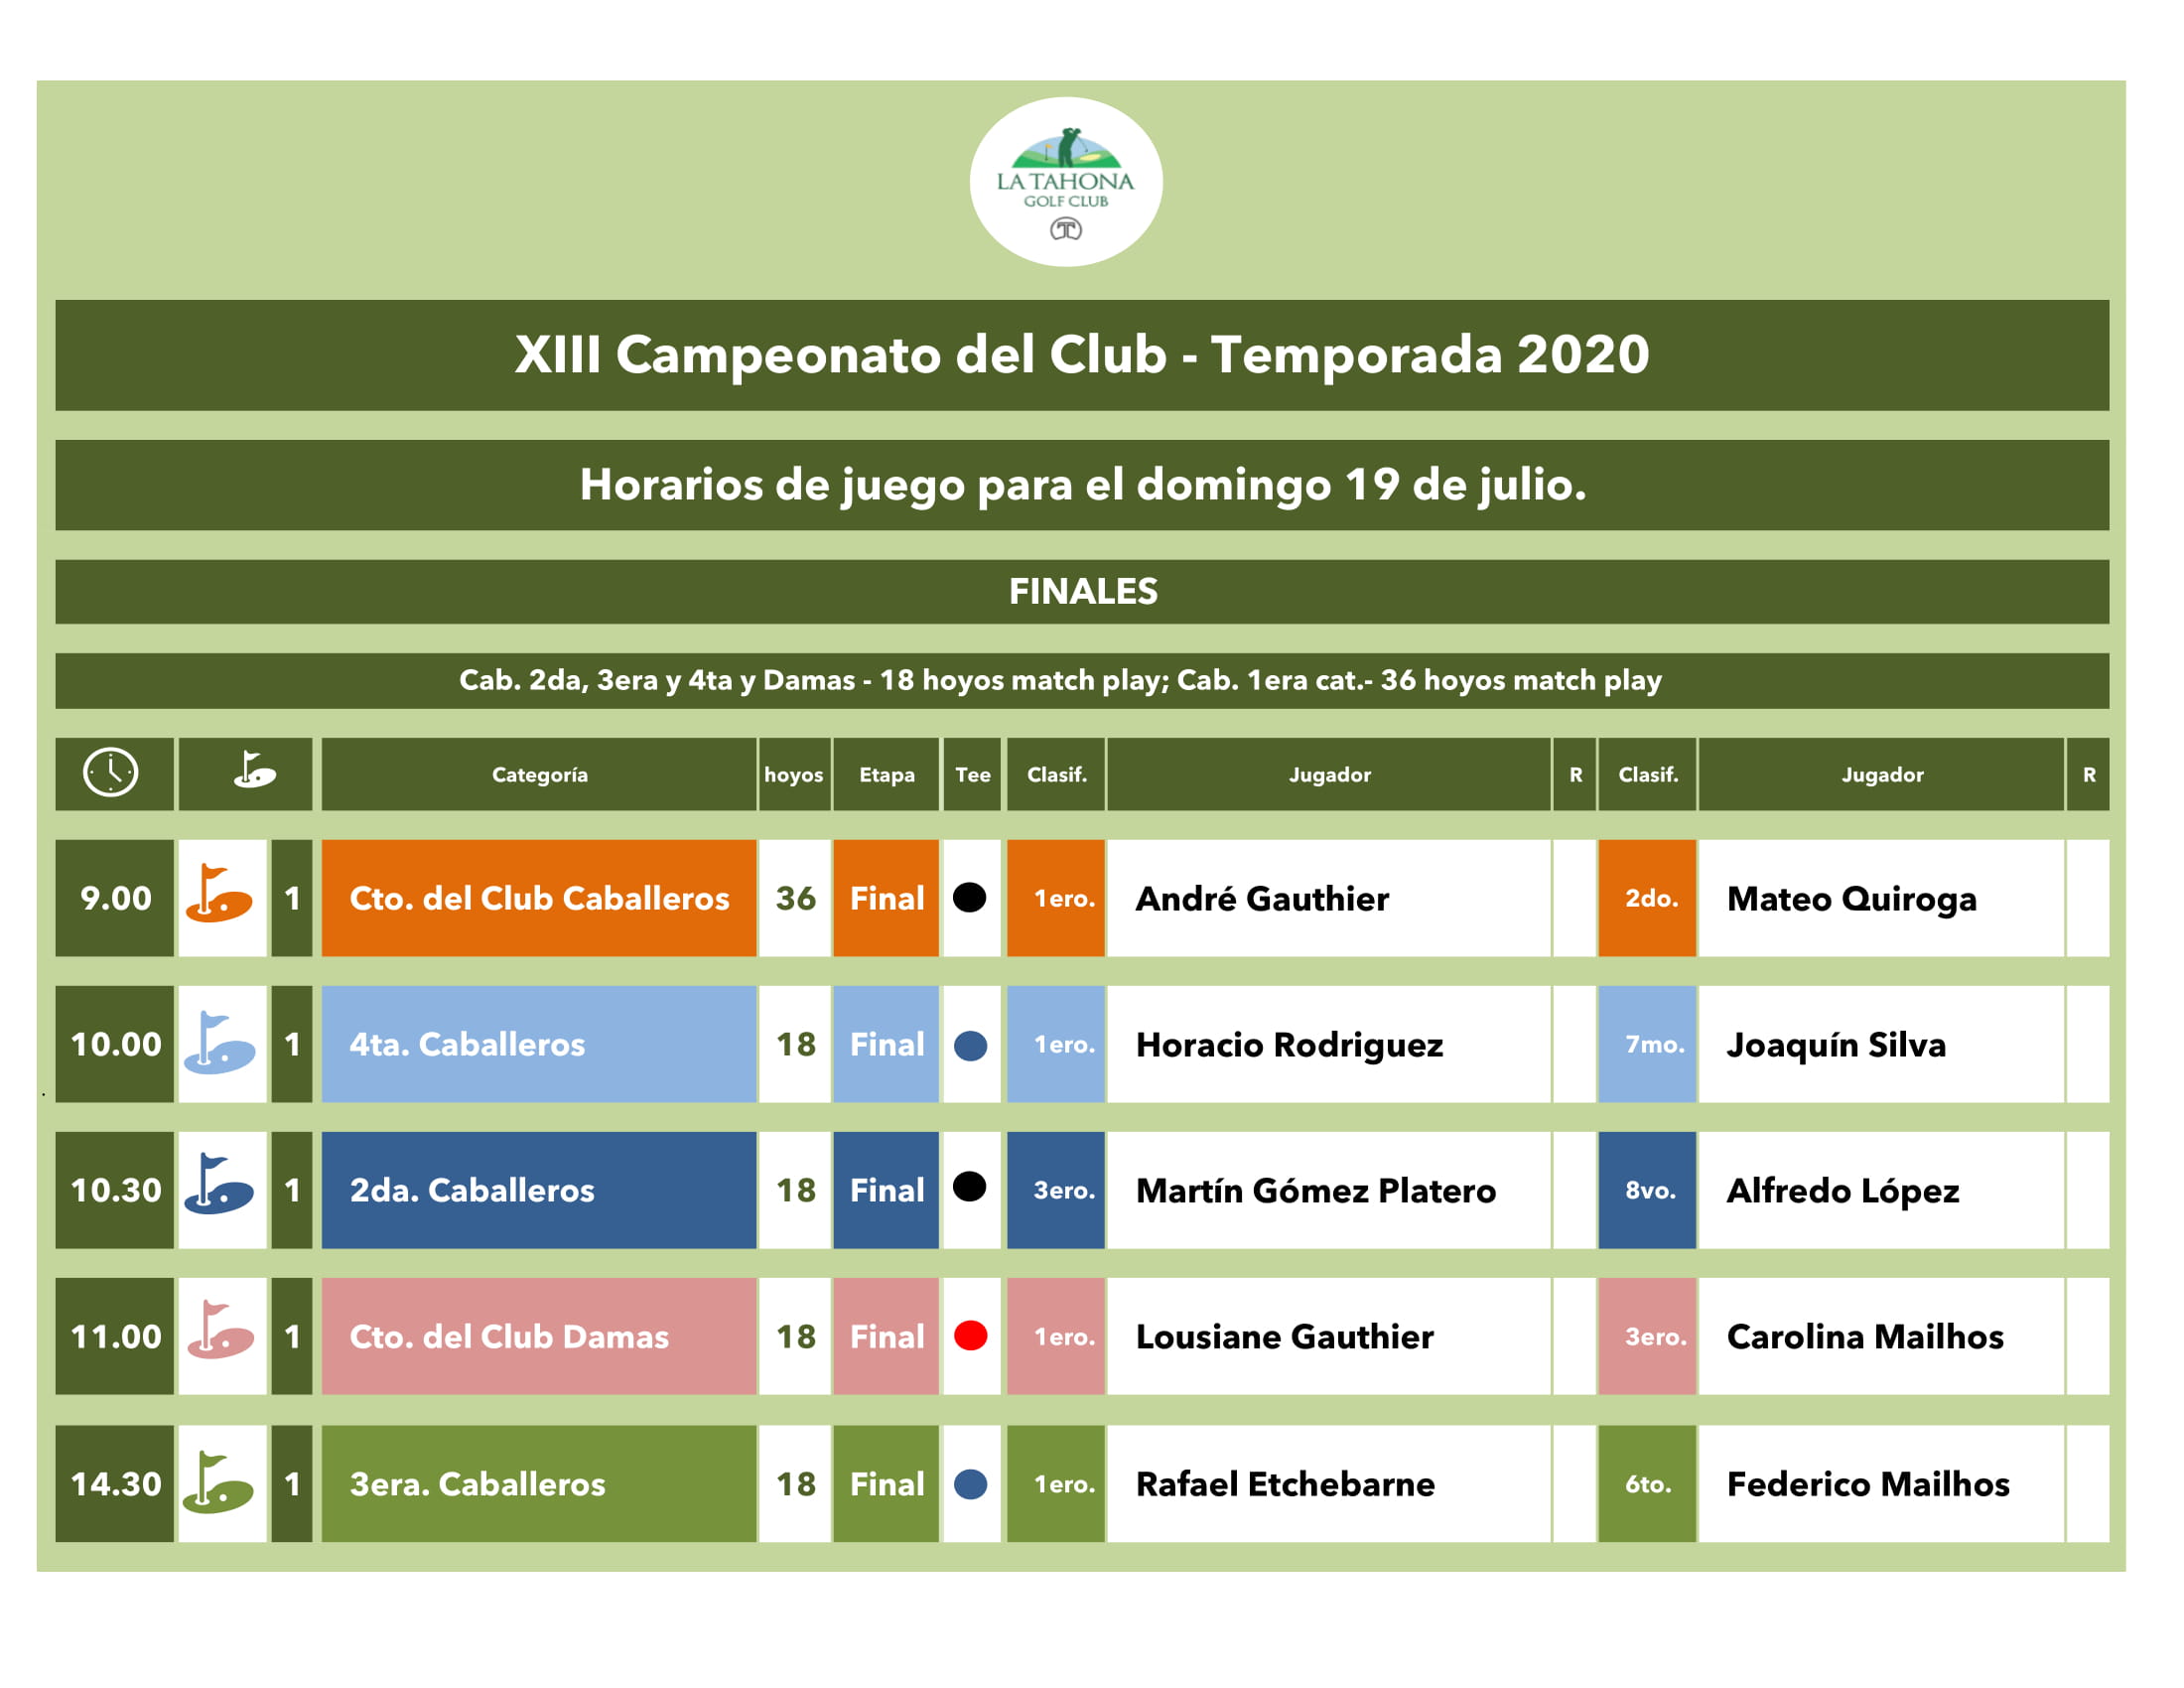 CAMPEONATO DEL CLUB 2020 - FINALES - HORARIOS